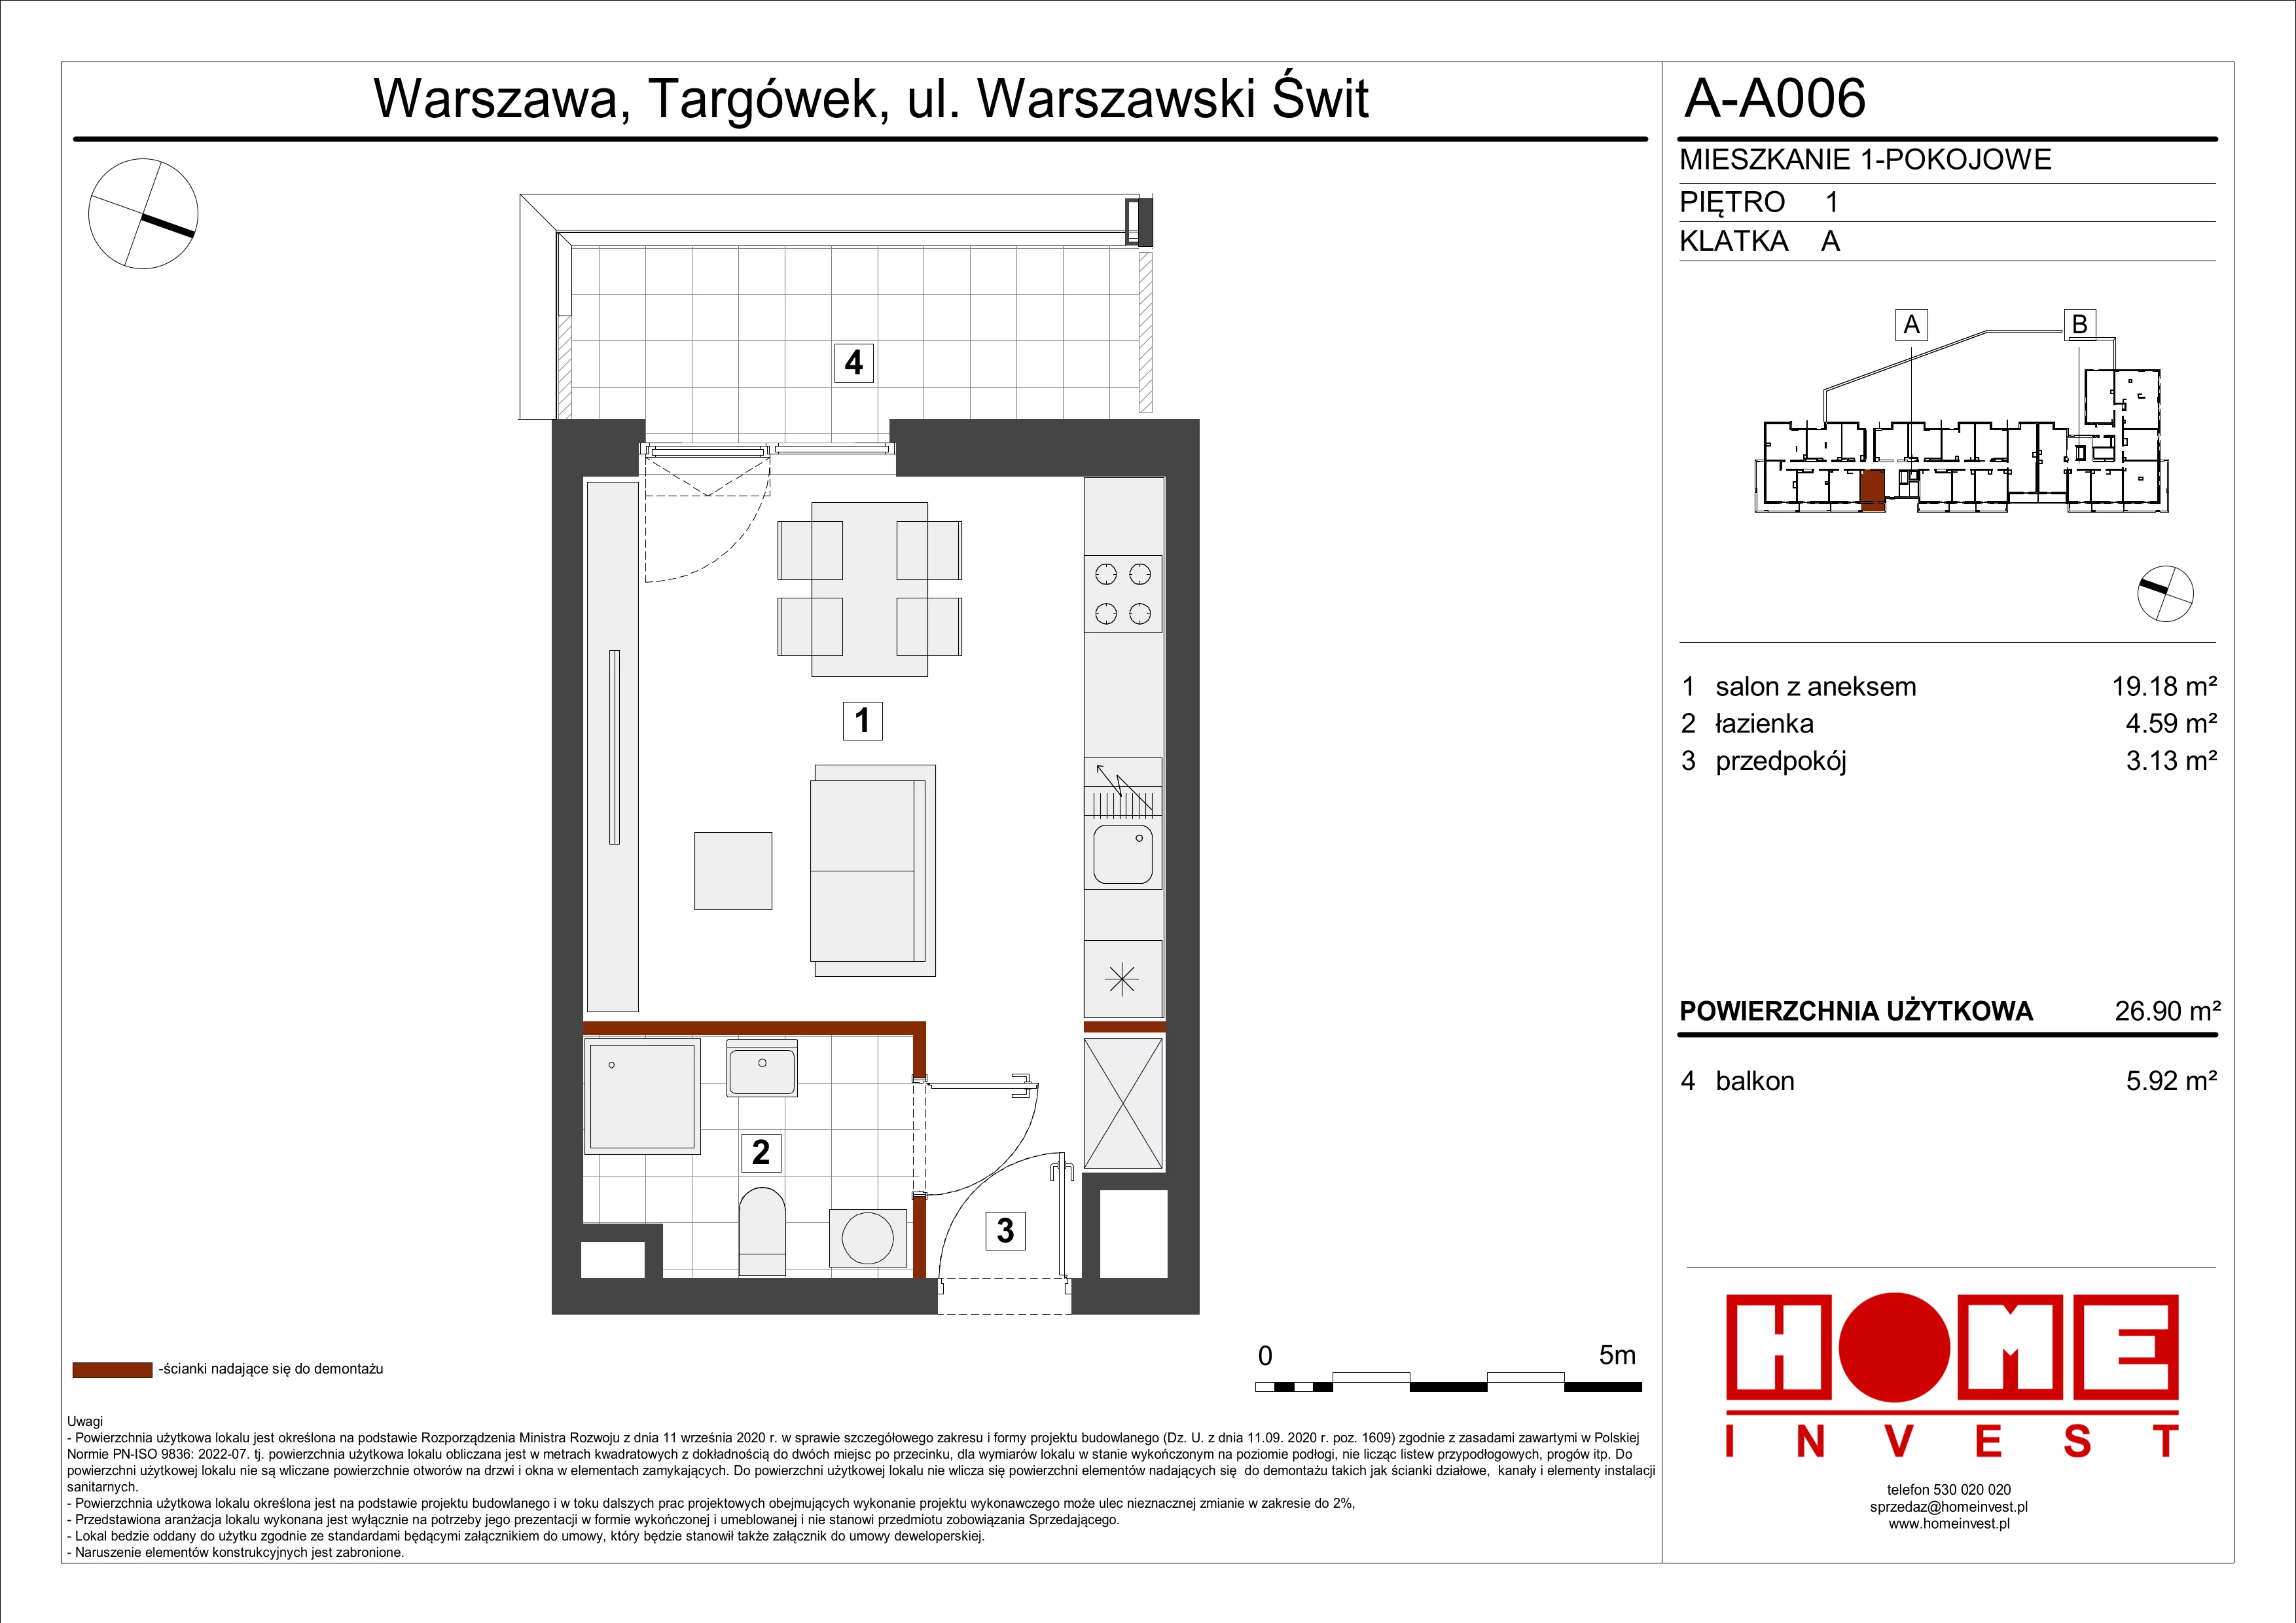 Mieszkanie 26,90 m², piętro 1, oferta nr A-A006, Warszawski Świt, Warszawa, Targówek, Bródno, ul. Warszawski Świt 5